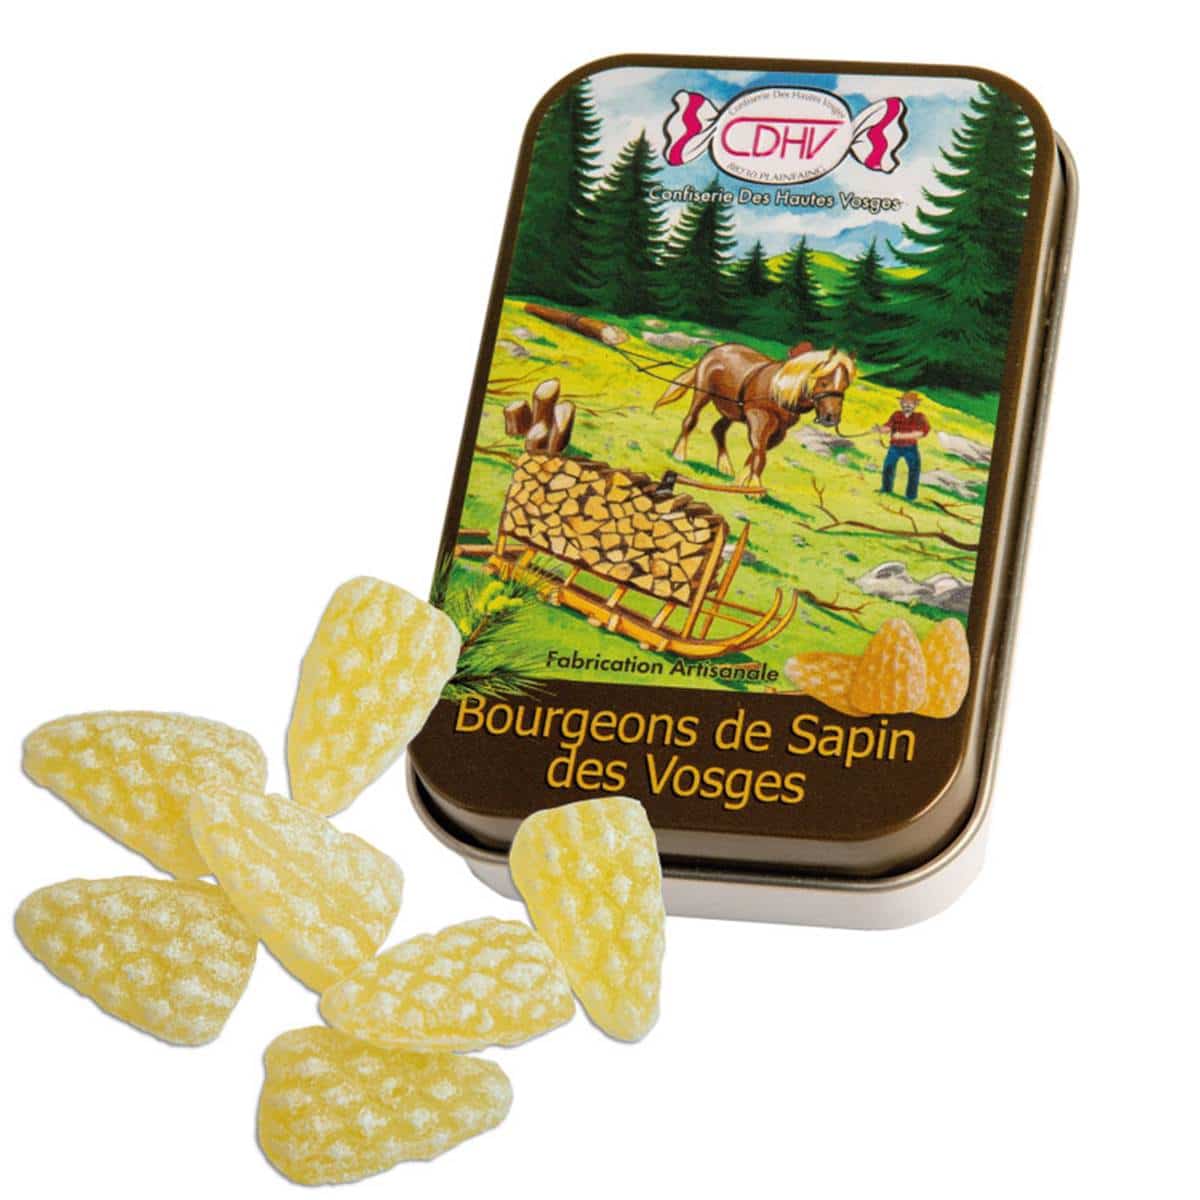 Bonbons des Vosges Artisanale Cerise Au Brin de Paille